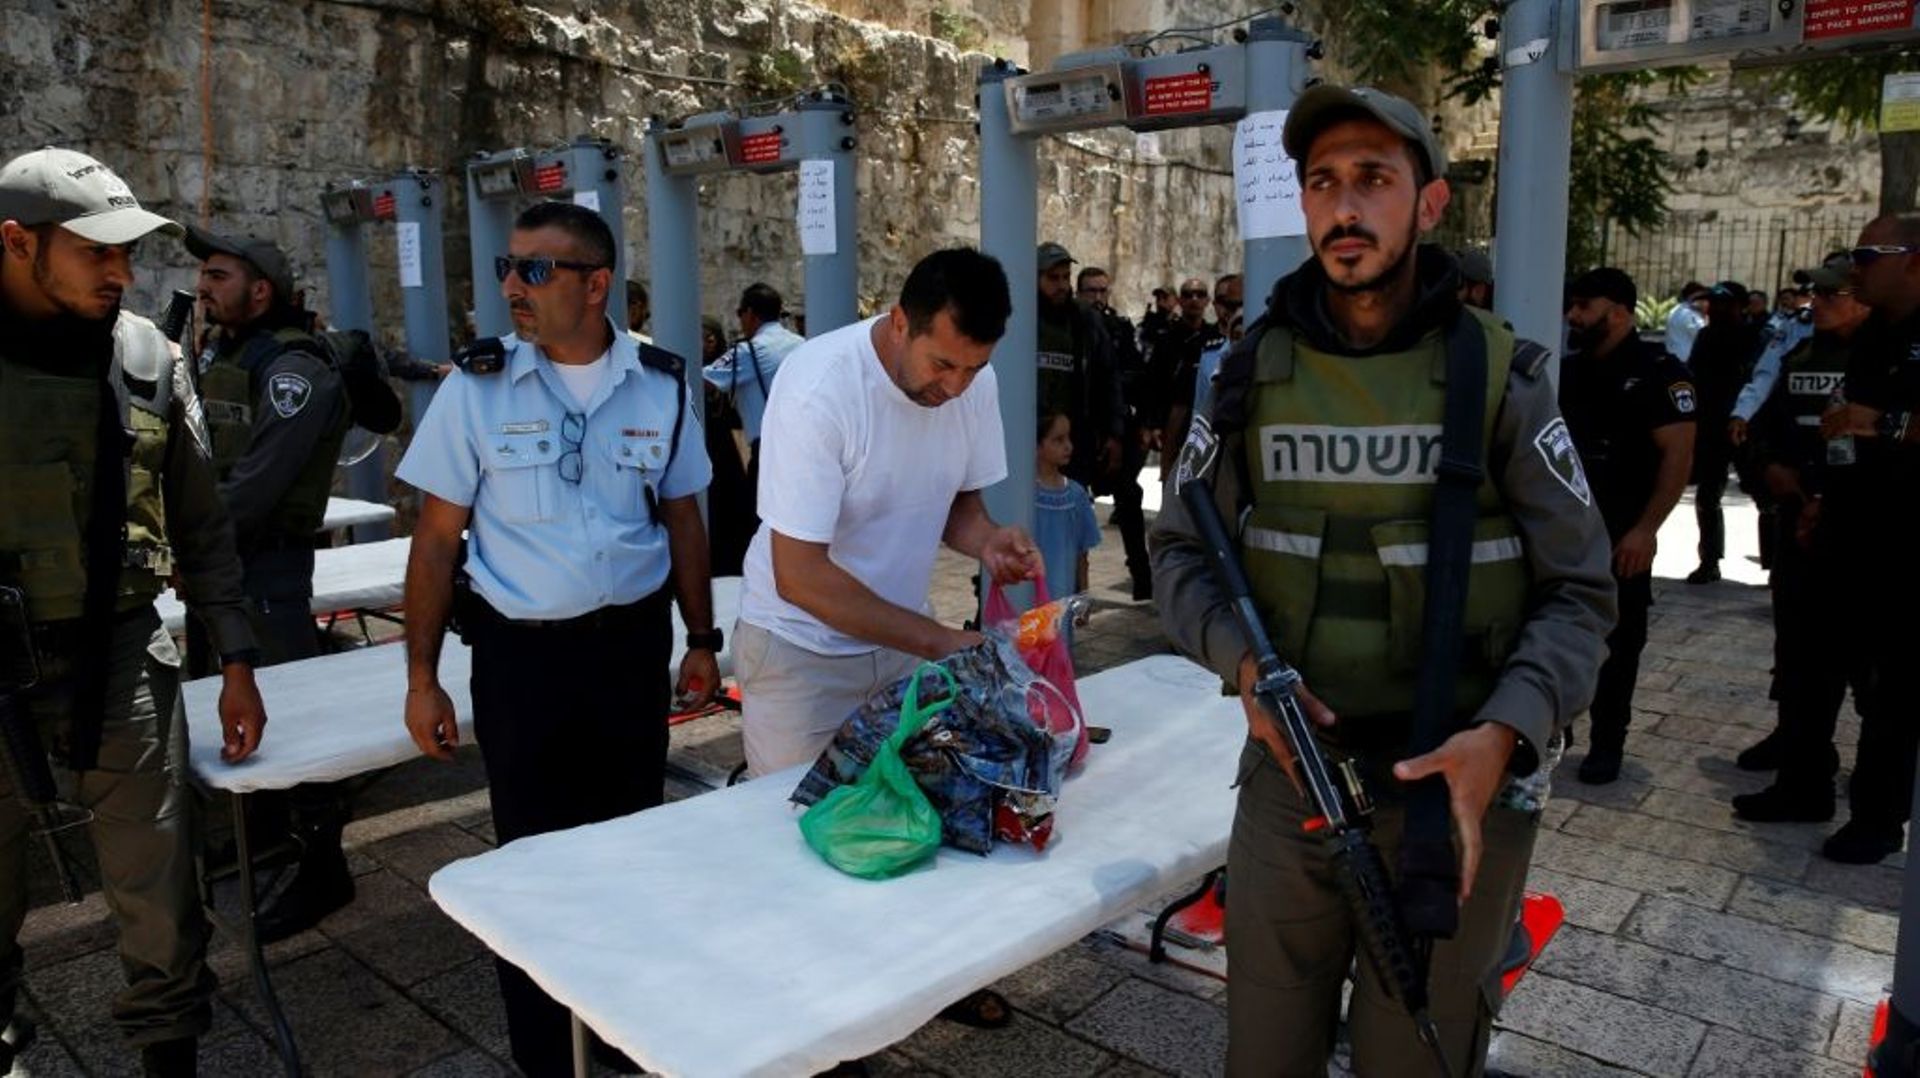 Un homme vide son sac après avoir traversé des portiques détecteurs de métaux, près de la Porte des Lions, l'une des principales entrées de la Vieille ville de Jérusalem, le 16 juillet 2017